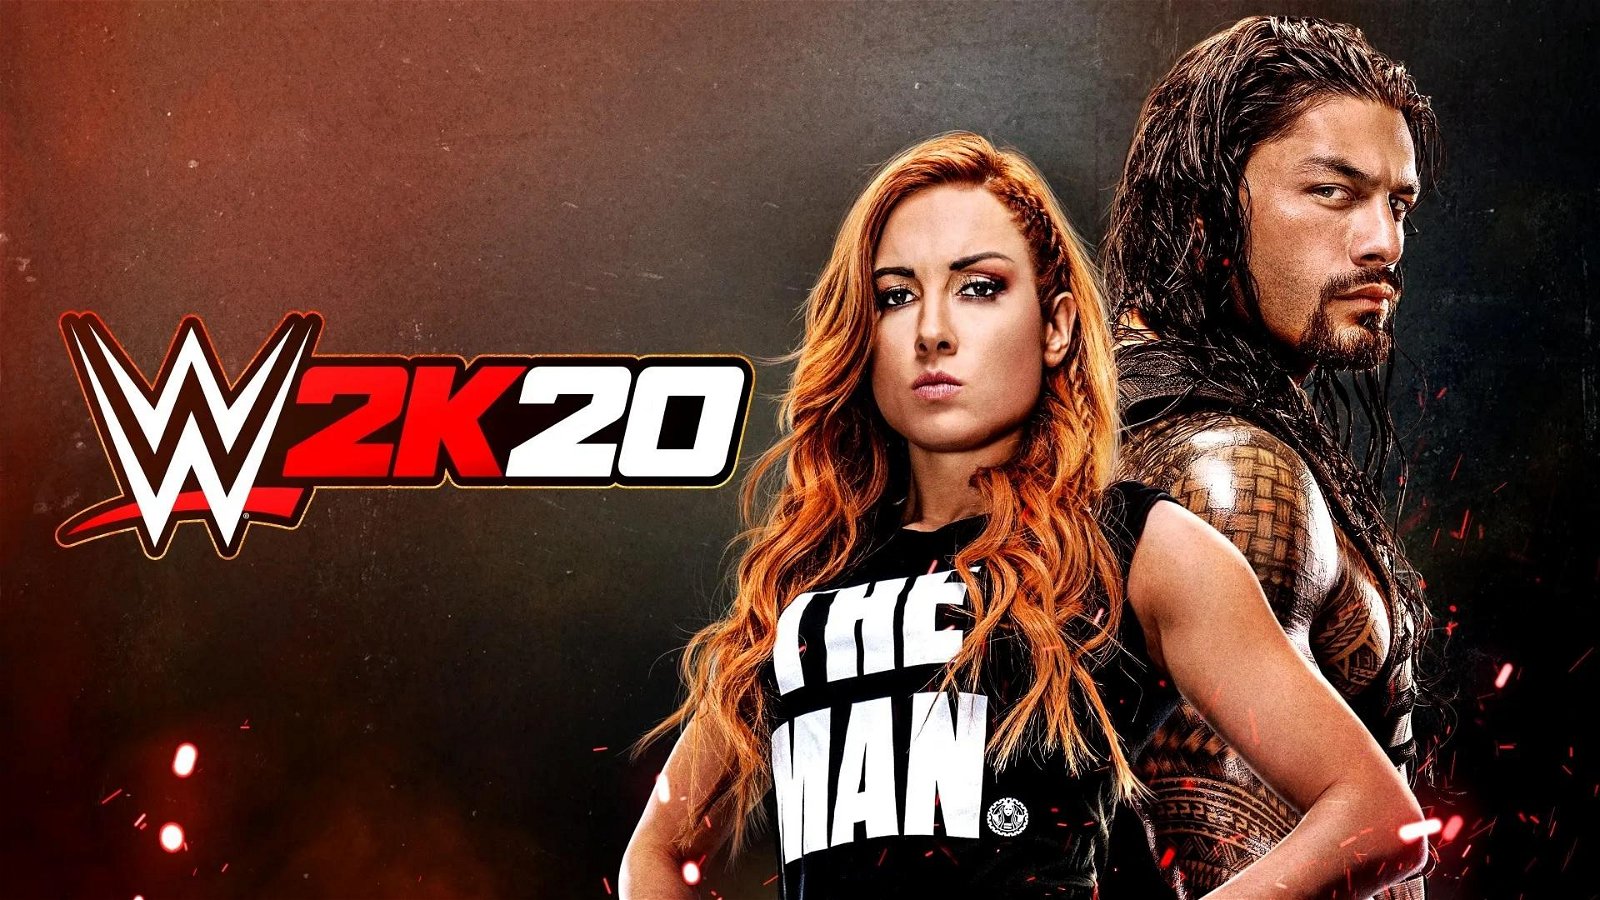 Take-Two delusa da qualità e vendite di WWE 2K20